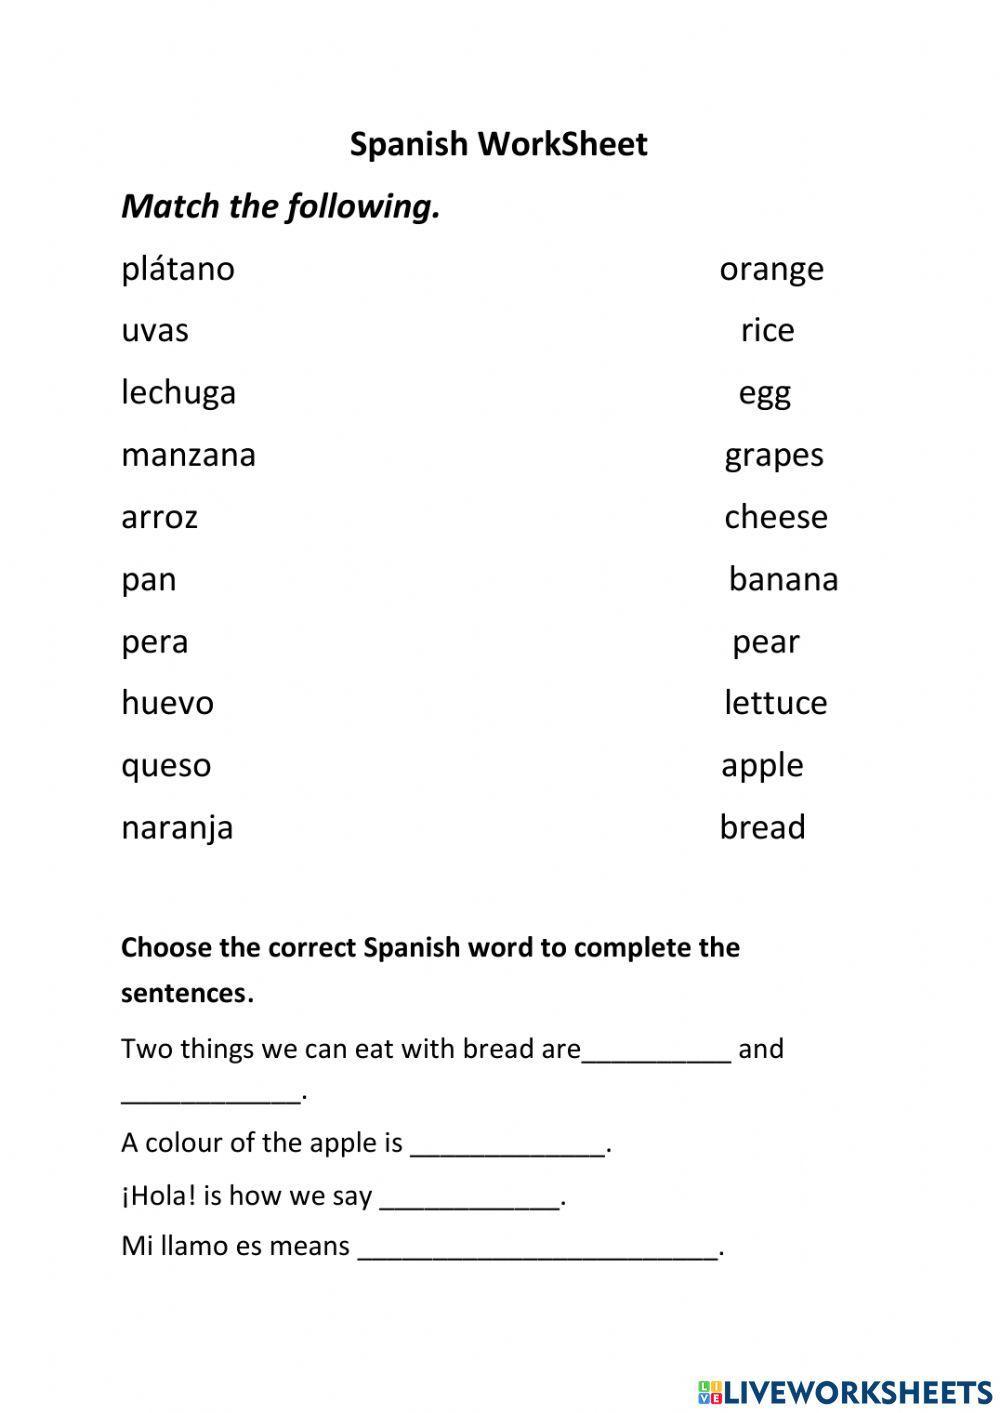 Spanish Worksheet